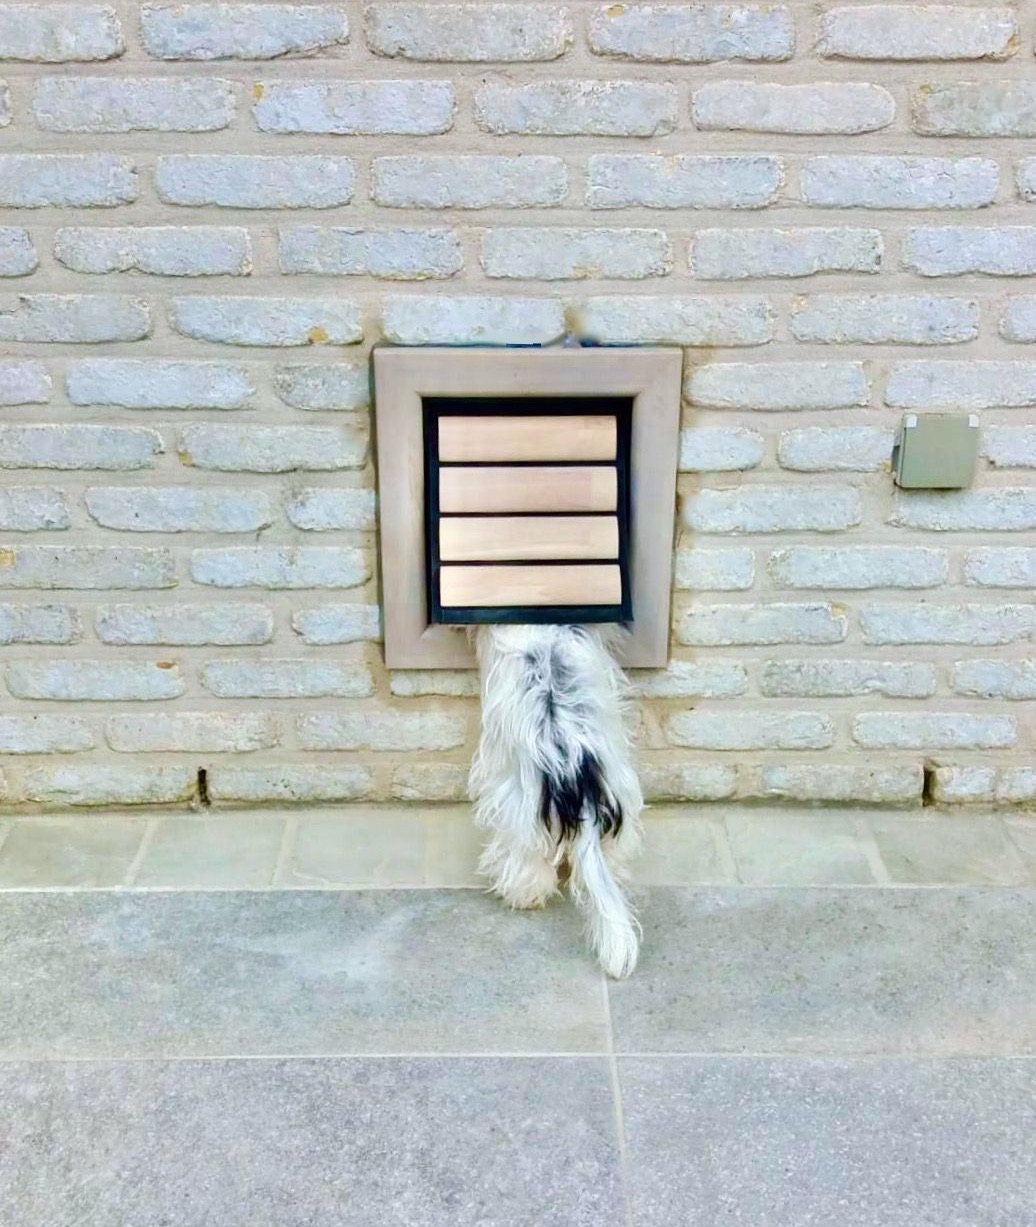 Hondenluiken | Nipper (Small) Grijs houten hondenluik voor kleine honden geïnstalleerd in een grijze bakstenen muur | © Tomsgates